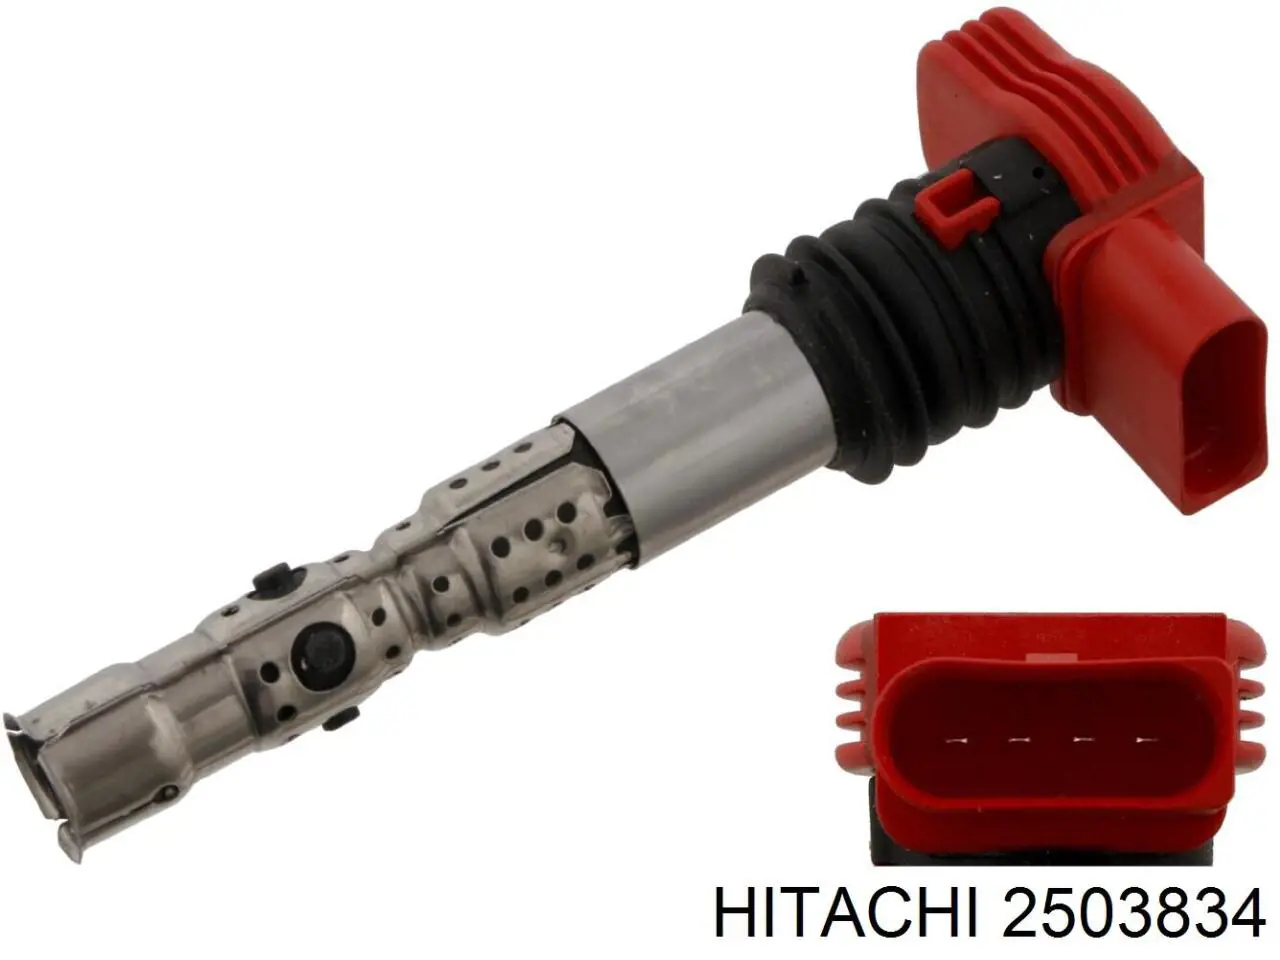 2503834 Hitachi bobina